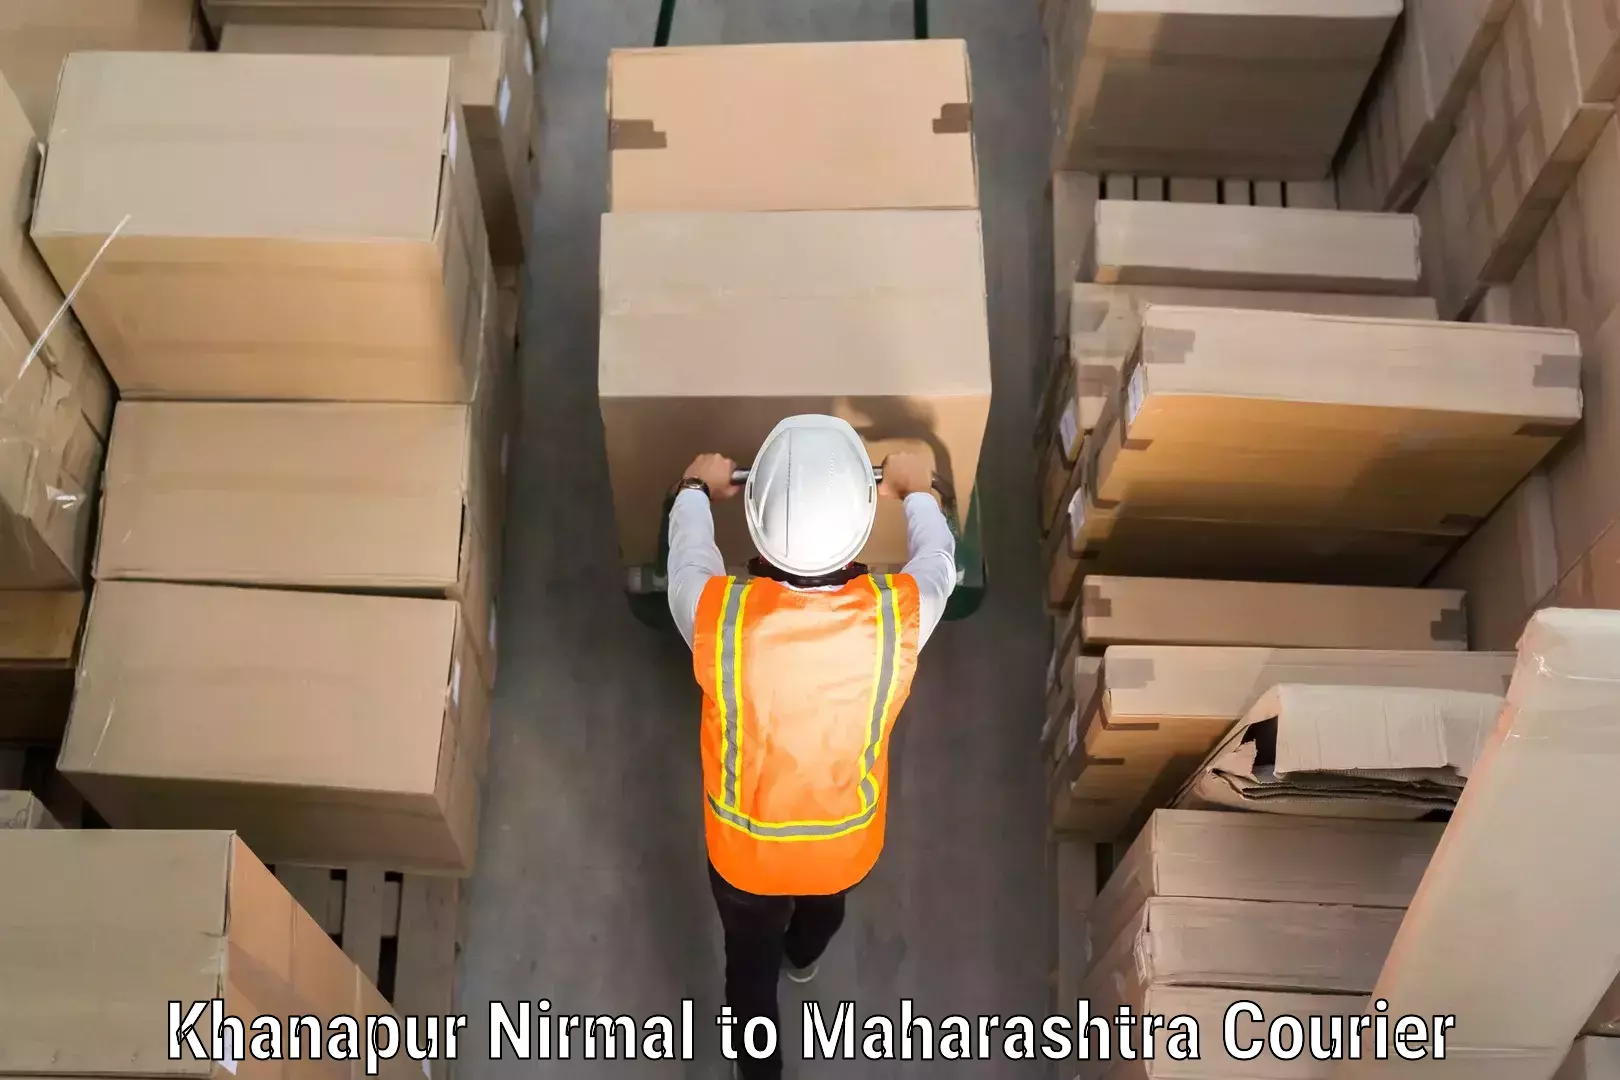 Automated luggage transport Khanapur Nirmal to IIT Mumbai